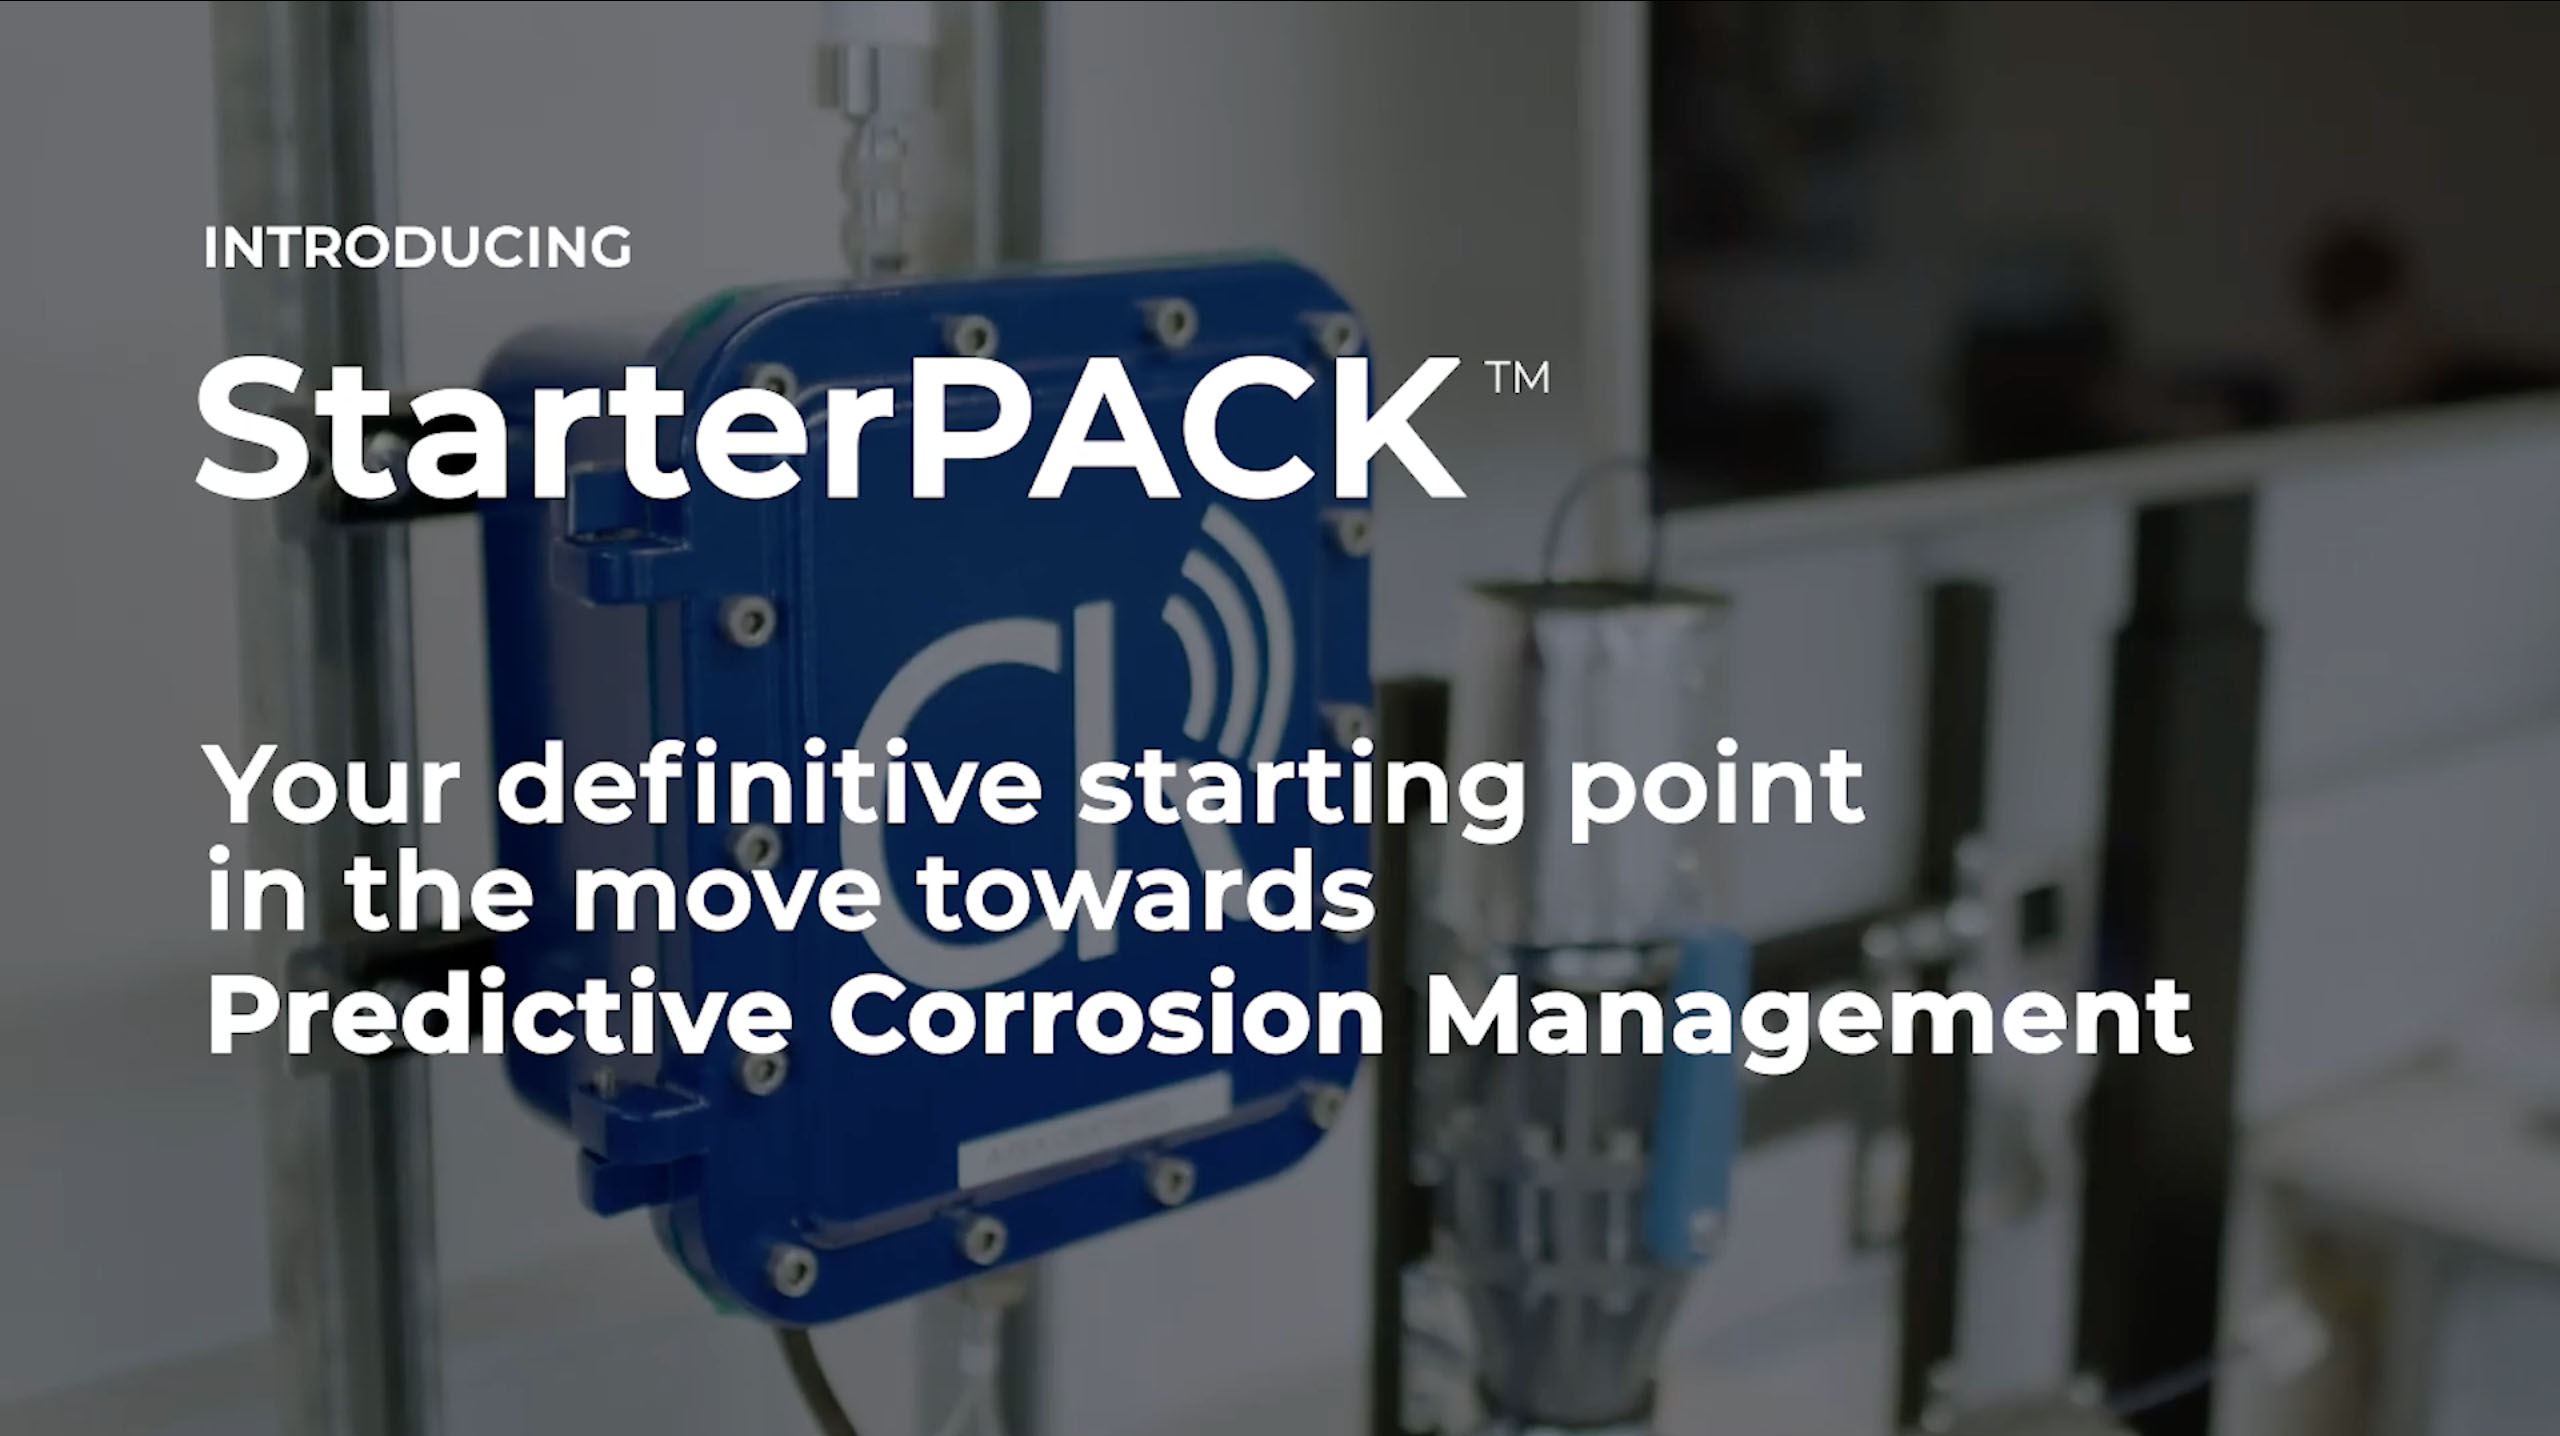 CorrosionRADAR StarterPACK™ unlocks the value of predictive corrosion monitoring for CUI